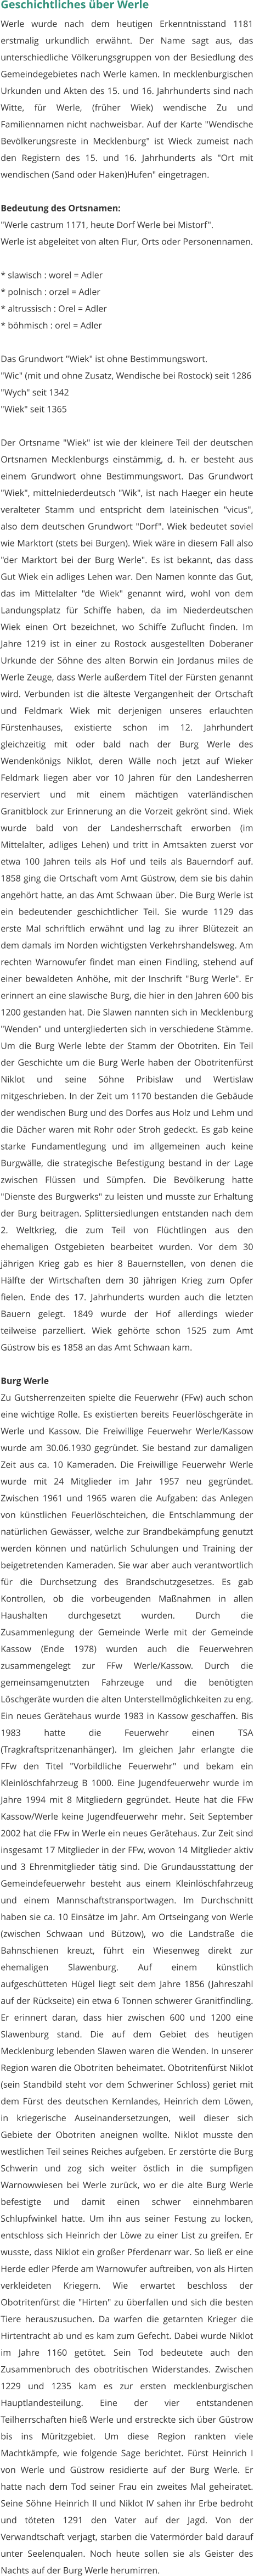 Geschichtliches über Werle Werle wurde nach dem heutigen Erkenntnisstand 1181 erstmalig urkundlich erwähnt. Der Name sagt aus, das unterschiedliche Völkerungsgruppen von der Besiedlung des Gemeindegebietes nach Werle kamen. In mecklenburgischen Urkunden und Akten des 15. und 16. Jahrhunderts sind nach Witte, für Werle, (früher Wiek) wendische Zu und Familiennamen nicht nachweisbar. Auf der Karte "Wendische Bevölkerungsreste in Mecklenburg" ist Wieck zumeist nach den Registern des 15. und 16. Jahrhunderts als "Ort mit wendischen (Sand oder Haken)Hufen" eingetragen.  Bedeutung des Ortsnamen: "Werle castrum 1171, heute Dorf Werle bei Mistorf". Werle ist abgeleitet von alten Flur, Orts oder Personennamen.  * slawisch : worel = Adler * polnisch : orzel = Adler * altrussisch : Orel = Adler * böhmisch : orel = Adler  Das Grundwort "Wiek" ist ohne Bestimmungswort. "Wic" (mit und ohne Zusatz, Wendische bei Rostock) seit 1286 "Wych" seit 1342 "Wiek" seit 1365  Der Ortsname "Wiek" ist wie der kleinere Teil der deutschen Ortsnamen Mecklenburgs einstämmig, d. h. er besteht aus einem Grundwort ohne Bestimmungswort. Das Grundwort "Wiek", mittelniederdeutsch "Wik", ist nach Haeger ein heute veralteter Stamm und entspricht dem lateinischen "vicus", also dem deutschen Grundwort "Dorf". Wiek bedeutet soviel wie Marktort (stets bei Burgen). Wiek wäre in diesem Fall also "der Marktort bei der Burg Werle". Es ist bekannt, das dass Gut Wiek ein adliges Lehen war. Den Namen konnte das Gut, das im Mittelalter "de Wiek" genannt wird, wohl von dem Landungsplatz für Schiffe haben, da im Niederdeutschen Wiek einen Ort bezeichnet, wo Schiffe Zuflucht finden. Im Jahre 1219 ist in einer zu Rostock ausgestellten Doberaner Urkunde der Söhne des alten Borwin ein Jordanus miles de Werle Zeuge, dass Werle außerdem Titel der Fürsten genannt wird. Verbunden ist die älteste Vergangenheit der Ortschaft und Feldmark Wiek mit derjenigen unseres erlauchten Fürstenhauses, existierte schon im 12. Jahrhundert gleichzeitig mit oder bald nach der Burg Werle des Wendenkönigs Niklot, deren Wälle noch jetzt auf Wieker Feldmark liegen aber vor 10 Jahren für den Landesherren reserviert und mit einem mächtigen vaterländischen Granitblock zur Erinnerung an die Vorzeit gekrönt sind. Wiek wurde bald von der Landesherrschaft erworben (im Mittelalter, adliges Lehen) und tritt in Amtsakten zuerst vor etwa 100 Jahren teils als Hof und teils als Bauerndorf auf. 1858 ging die Ortschaft vom Amt Güstrow, dem sie bis dahin angehört hatte, an das Amt Schwaan über. Die Burg Werle ist ein bedeutender geschichtlicher Teil. Sie wurde 1129 das erste Mal schriftlich erwähnt und lag zu ihrer Blütezeit an dem damals im Norden wichtigsten Verkehrshandelsweg. Am rechten Warnowufer findet man einen Findling, stehend auf einer bewaldeten Anhöhe, mit der Inschrift "Burg Werle". Er erinnert an eine slawische Burg, die hier in den Jahren 600 bis 1200 gestanden hat. Die Slawen nannten sich in Mecklenburg "Wenden" und untergliederten sich in verschiedene Stämme. Um die Burg Werle lebte der Stamm der Obotriten. Ein Teil der Geschichte um die Burg Werle haben der Obotritenfürst Niklot und seine Söhne Pribislaw und Wertislaw mitgeschrieben. In der Zeit um 1170 bestanden die Gebäude der wendischen Burg und des Dorfes aus Holz und Lehm und die Dächer waren mit Rohr oder Stroh gedeckt. Es gab keine starke Fundamentlegung und im allgemeinen auch keine Burgwälle, die strategische Befestigung bestand in der Lage zwischen Flüssen und Sümpfen. Die Bevölkerung hatte "Dienste des Burgwerks" zu leisten und musste zur Erhaltung der Burg beitragen. Splittersiedlungen entstanden nach dem 2. Weltkrieg, die zum Teil von Flüchtlingen aus den ehemaligen Ostgebieten bearbeitet wurden. Vor dem 30 jährigen Krieg gab es hier 8 Bauernstellen, von denen die Hälfte der Wirtschaften dem 30 jährigen Krieg zum Opfer fielen. Ende des 17. Jahrhunderts wurden auch die letzten Bauern gelegt. 1849 wurde der Hof allerdings wieder teilweise parzelliert. Wiek gehörte schon 1525 zum Amt Güstrow bis es 1858 an das Amt Schwaan kam.  Burg Werle Zu Gutsherrenzeiten spielte die Feuerwehr (FFw) auch schon eine wichtige Rolle. Es existierten bereits Feuerlöschgeräte in Werle und Kassow. Die Freiwillige Feuerwehr Werle/Kassow wurde am 30.06.1930 gegründet. Sie bestand zur damaligen Zeit aus ca. 10 Kameraden. Die Freiwillige Feuerwehr Werle wurde mit 24 Mitglieder im Jahr 1957 neu gegründet. Zwischen 1961 und 1965 waren die Aufgaben: das Anlegen von künstlichen Feuerlöschteichen, die Entschlammung der natürlichen Gewässer, welche zur Brandbekämpfung genutzt werden können und natürlich Schulungen und Training der beigetretenden Kameraden. Sie war aber auch verantwortlich für die Durchsetzung des Brandschutzgesetzes. Es gab Kontrollen, ob die vorbeugenden Maßnahmen in allen Haushalten durchgesetzt wurden. Durch die Zusammenlegung der Gemeinde Werle mit der Gemeinde Kassow (Ende 1978) wurden auch die Feuerwehren zusammengelegt zur FFw Werle/Kassow. Durch die gemeinsamgenutzten Fahrzeuge und die benötigten Löschgeräte wurden die alten Unterstellmöglichkeiten zu eng. Ein neues Gerätehaus wurde 1983 in Kassow geschaffen. Bis 1983 hatte die Feuerwehr einen TSA (Tragkraftspritzenanhänger). Im gleichen Jahr erlangte die FFw den Titel "Vorbildliche Feuerwehr" und bekam ein Kleinlöschfahrzeug B 1000. Eine Jugendfeuerwehr wurde im Jahre 1994 mit 8 Mitgliedern gegründet. Heute hat die FFw Kassow/Werle keine Jugendfeuerwehr mehr. Seit September 2002 hat die FFw in Werle ein neues Gerätehaus. Zur Zeit sind insgesamt 17 Mitglieder in der FFw, wovon 14 Mitglieder aktiv und 3 Ehrenmitglieder tätig sind. Die Grundausstattung der Gemeindefeuerwehr besteht aus einem Kleinlöschfahrzeug und einem Mannschaftstransportwagen. Im Durchschnitt haben sie ca. 10 Einsätze im Jahr. Am Ortseingang von Werle (zwischen Schwaan und Bützow), wo die Landstraße die Bahnschienen kreuzt, führt ein Wiesenweg direkt zur ehemaligen Slawenburg. Auf einem künstlich aufgeschütteten Hügel liegt seit dem Jahre 1856 (Jahreszahl auf der Rückseite) ein etwa 6 Tonnen schwerer Granitfindling. Er erinnert daran, dass hier zwischen 600 und 1200 eine Slawenburg stand. Die auf dem Gebiet des heutigen Mecklenburg lebenden Slawen waren die Wenden. In unserer Region waren die Obotriten beheimatet. Obotritenfürst Niklot (sein Standbild steht vor dem Schweriner Schloss) geriet mit dem Fürst des deutschen Kernlandes, Heinrich dem Löwen, in kriegerische Auseinandersetzungen, weil dieser sich Gebiete der Obotriten aneignen wollte. Niklot musste den westlichen Teil seines Reiches aufgeben. Er zerstörte die Burg Schwerin und zog sich weiter östlich in die sumpfigen Warnowwiesen bei Werle zurück, wo er die alte Burg Werle befestigte und damit einen schwer einnehmbaren Schlupfwinkel hatte. Um ihn aus seiner Festung zu locken, entschloss sich Heinrich der Löwe zu einer List zu greifen. Er wusste, dass Niklot ein großer Pferdenarr war. So ließ er eine Herde edler Pferde am Warnowufer auftreiben, von als Hirten verkleideten Kriegern. Wie erwartet beschloss der Obotritenfürst die "Hirten" zu überfallen und sich die besten Tiere herauszusuchen. Da warfen die getarnten Krieger die Hirtentracht ab und es kam zum Gefecht. Dabei wurde Niklot im Jahre 1160 getötet. Sein Tod bedeutete auch den Zusammenbruch des obotritischen Widerstandes. Zwischen 1229 und 1235 kam es zur ersten mecklenburgischen Hauptlandesteilung. Eine der vier entstandenen Teilherrschaften hieß Werle und erstreckte sich über Güstrow bis ins Müritzgebiet. Um diese Region rankten viele Machtkämpfe, wie folgende Sage berichtet. Fürst Heinrich I von Werle und Güstrow residierte auf der Burg Werle. Er hatte nach dem Tod seiner Frau ein zweites Mal geheiratet. Seine Söhne Heinrich II und Niklot IV sahen ihr Erbe bedroht und töteten 1291 den Vater auf der Jagd. Von der Verwandtschaft verjagt, starben die Vatermörder bald darauf unter Seelenqualen. Noch heute sollen sie als Geister des Nachts auf der Burg Werle herumirren.